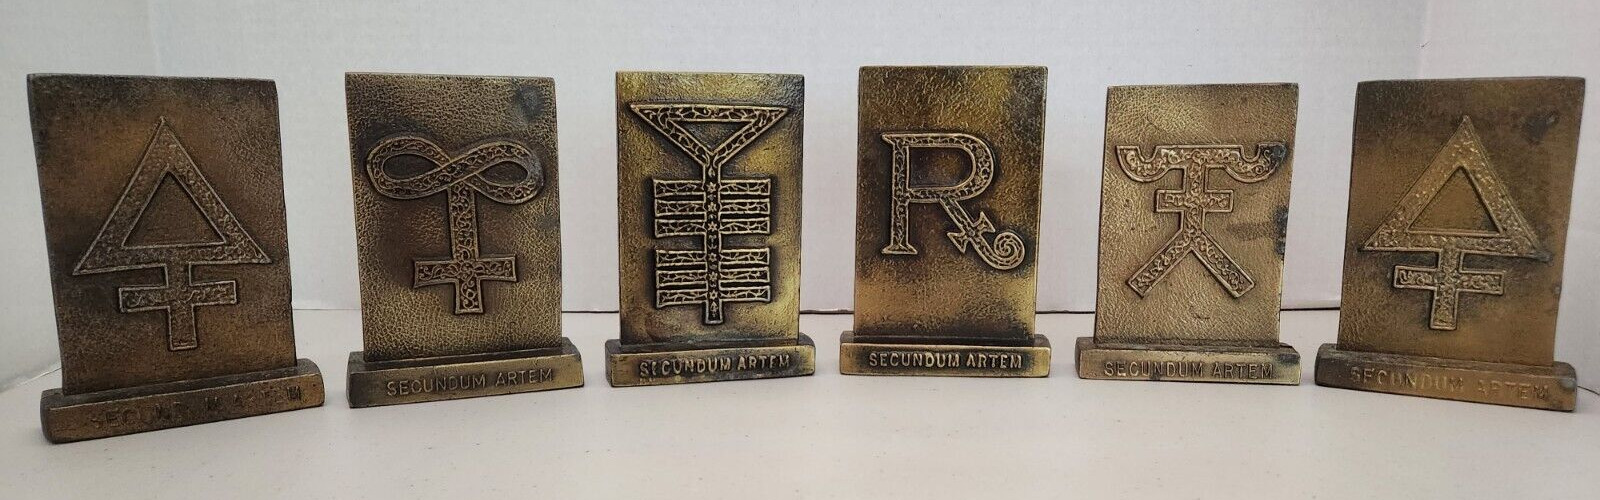 1977-81 Tinactin Apothecary Symbols Bronze Metal Paperweight/Bookends 6 Lot SET